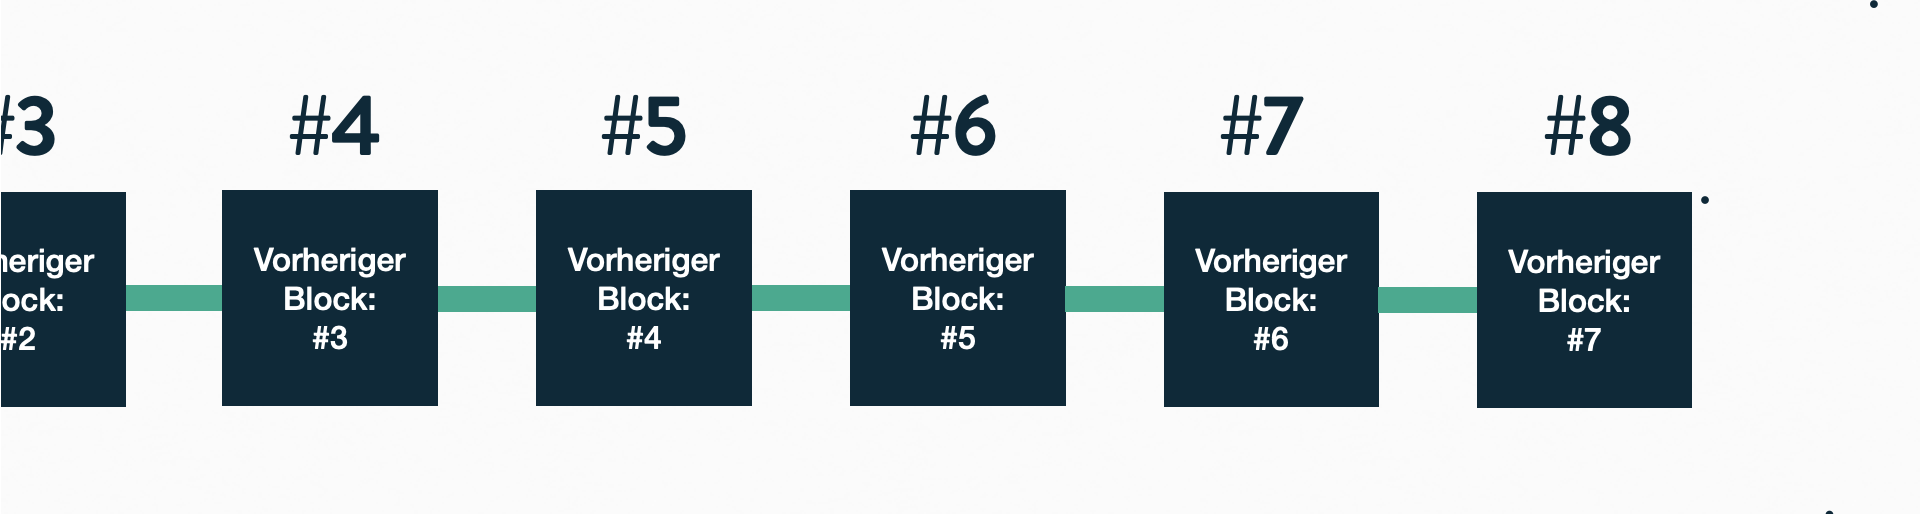 Einfache Illustration einer Blockchain